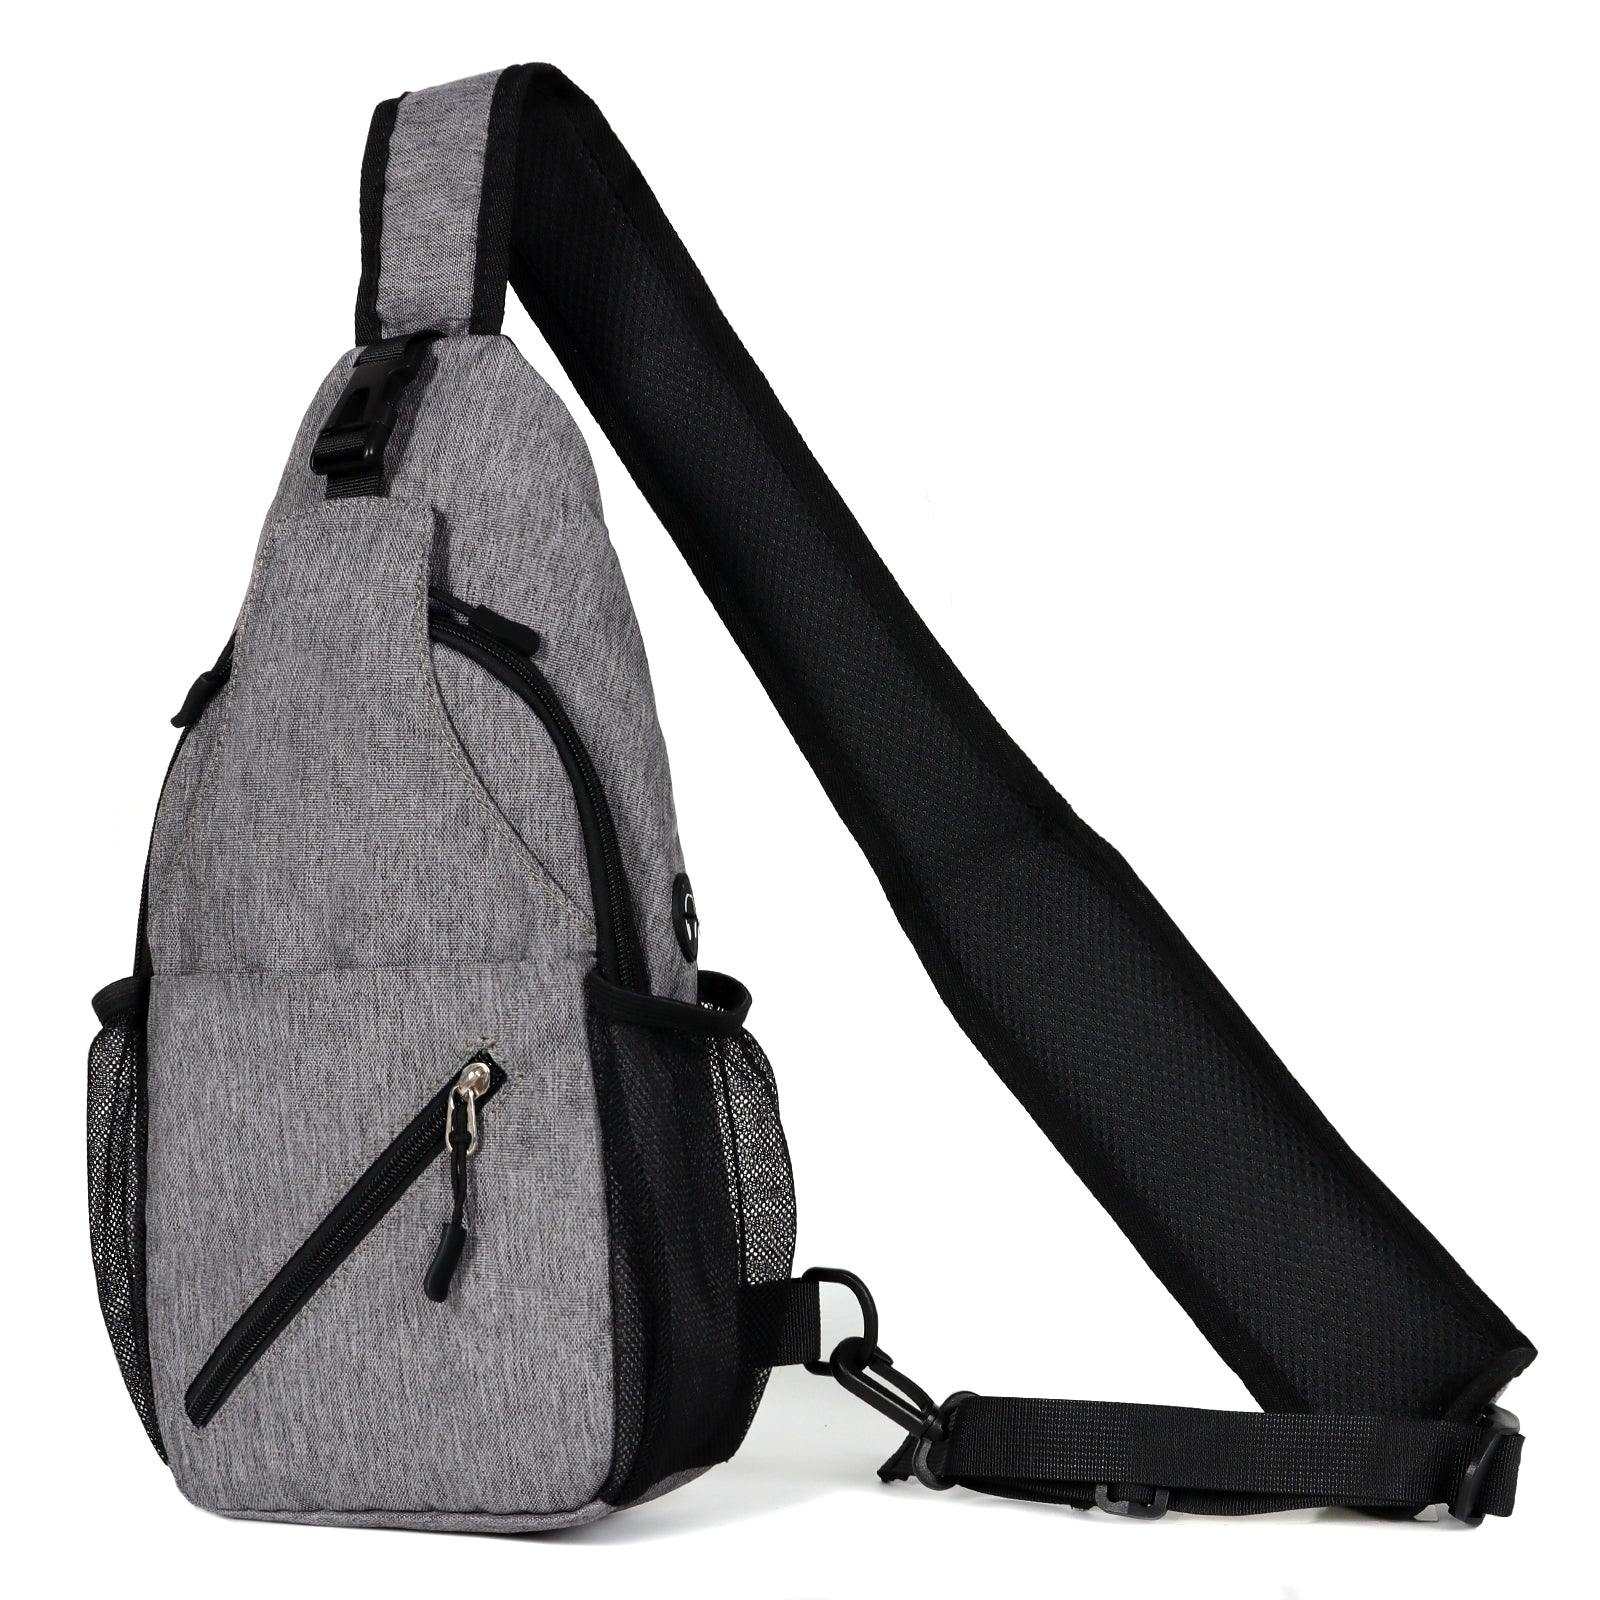  TAN.TOMI Brusttasche, Umhängetasche mit verstellbarem Schultergurt, ist ideal für Outdoor-Aktivitäten und Reisen. Sie verfügt über einen USB-Anschluss und einen Kopfhöreranschluss, was sie zum Must-Have für das Laufen und Ausflüge macht.